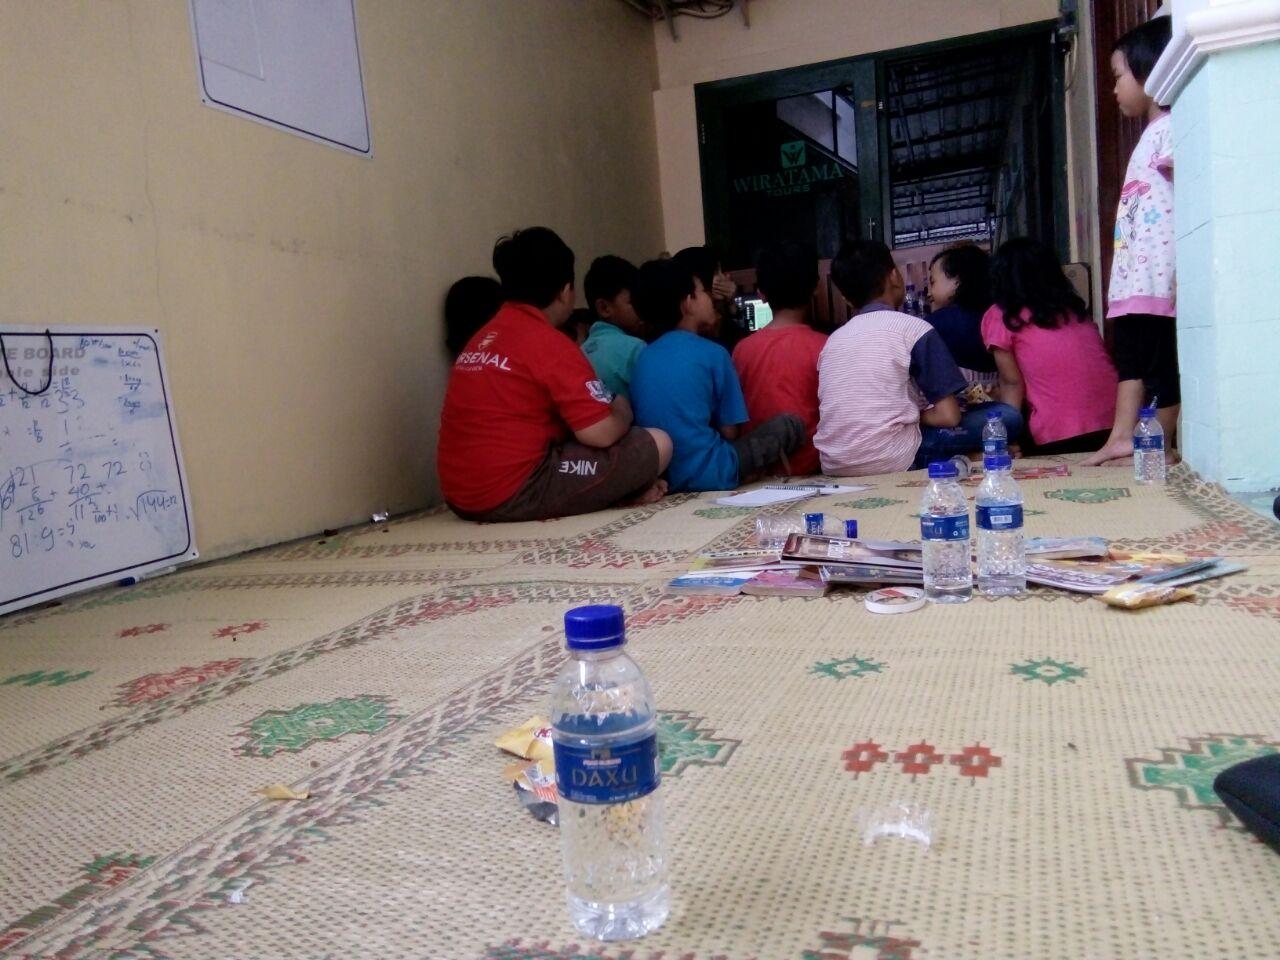 Anak-anak duduk berkumpul di tikar